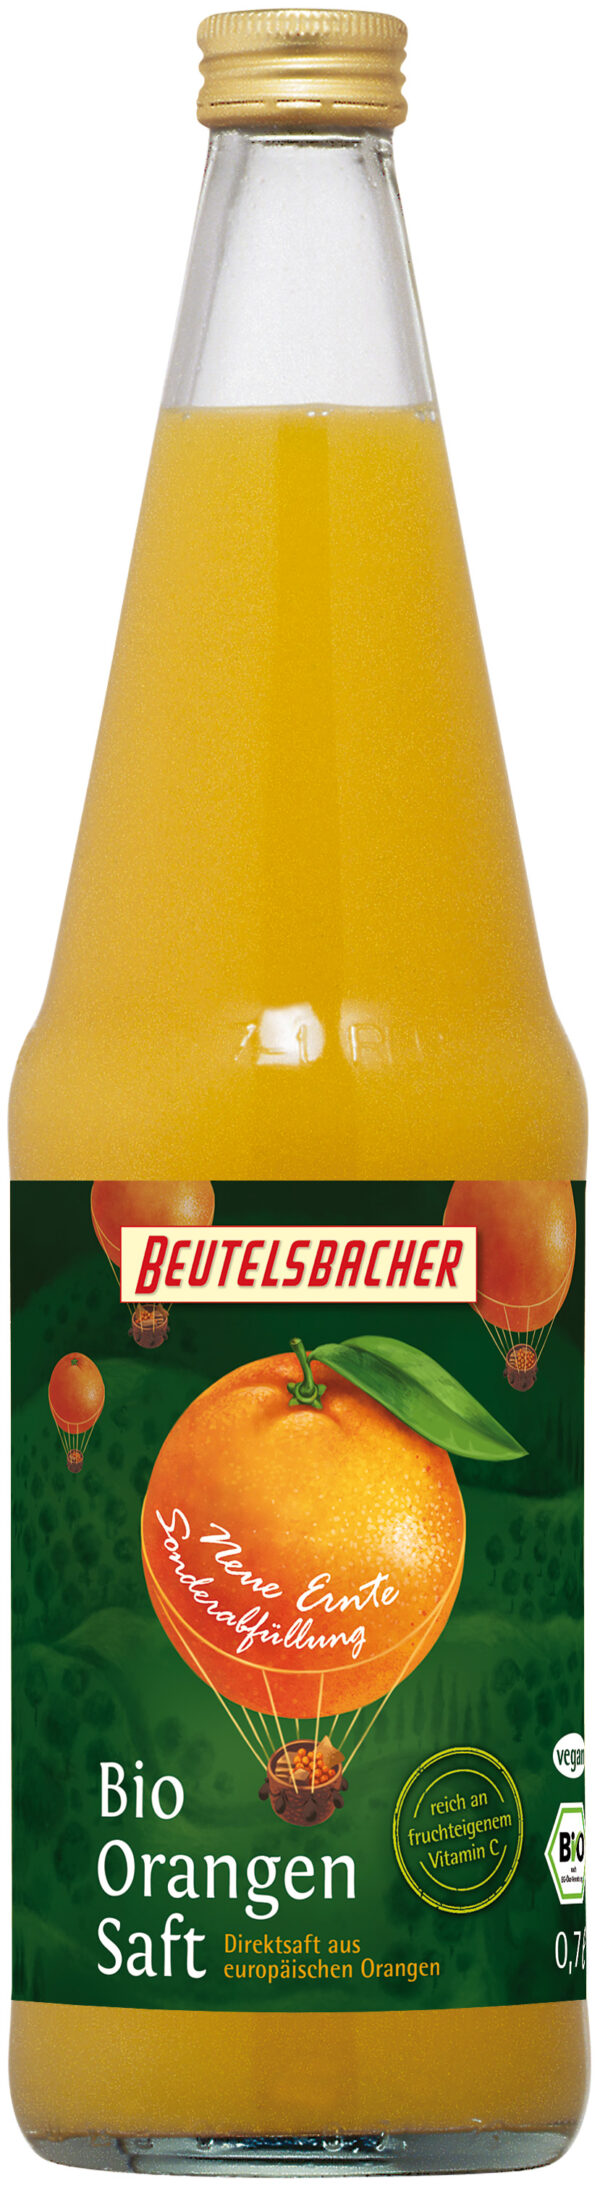 BEUTELSBACHER Bio Orangen Direktsaft neue Ernte 0,7l